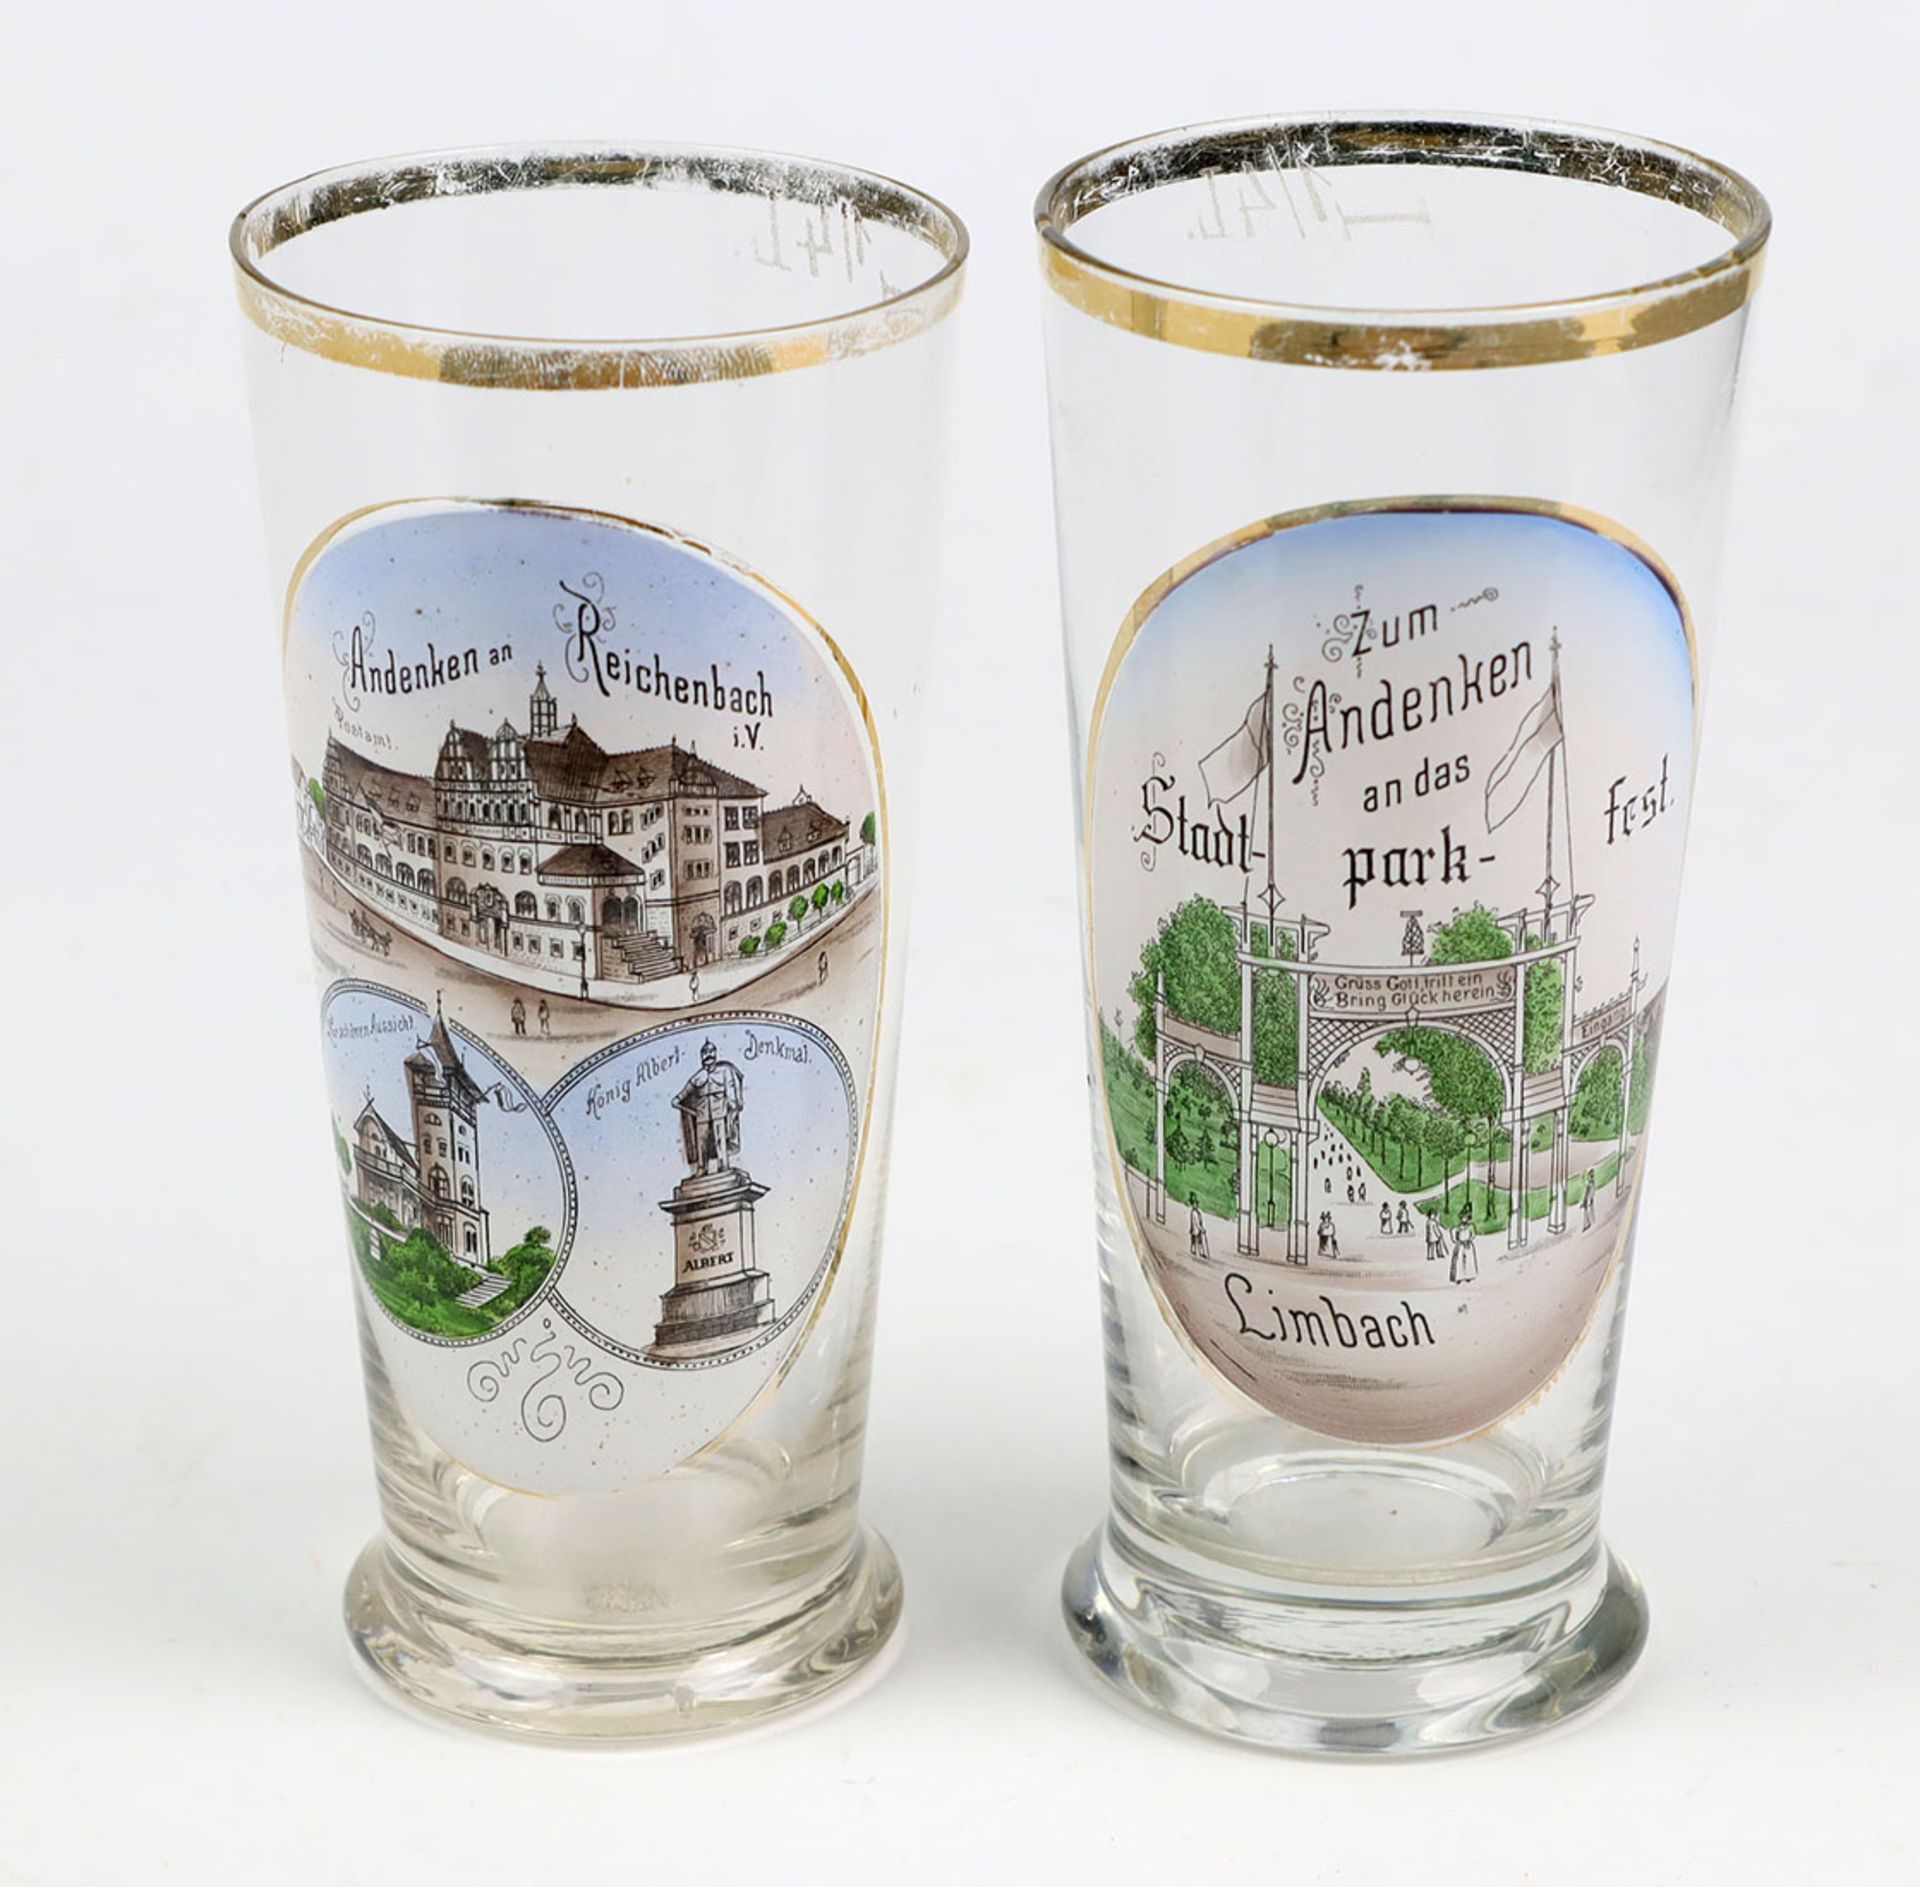 2 Andenkengläser um 1900farbloses Glas in konischer Form auf Rundfuß, Schauseite je